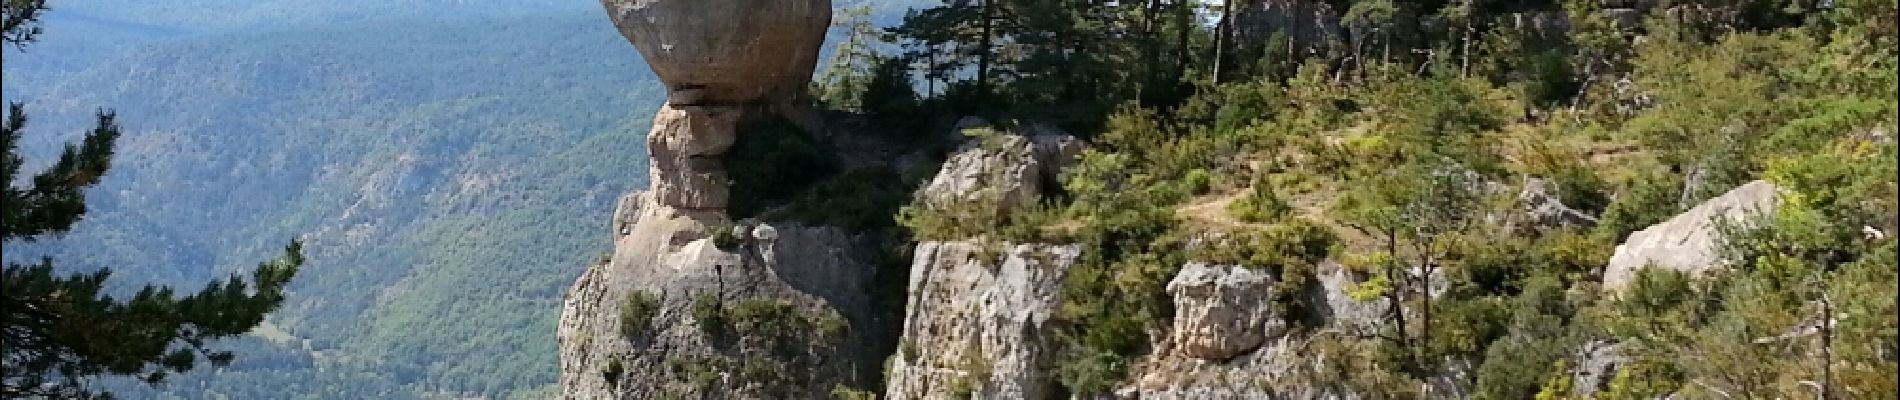 Randonnée Marche Le Rozier - Le Rozier - Causse Méjean Gorges du Tarn et de la Jonte - 12.5km 750m 4h50 (1h20) - 2014 09 07 - Photo